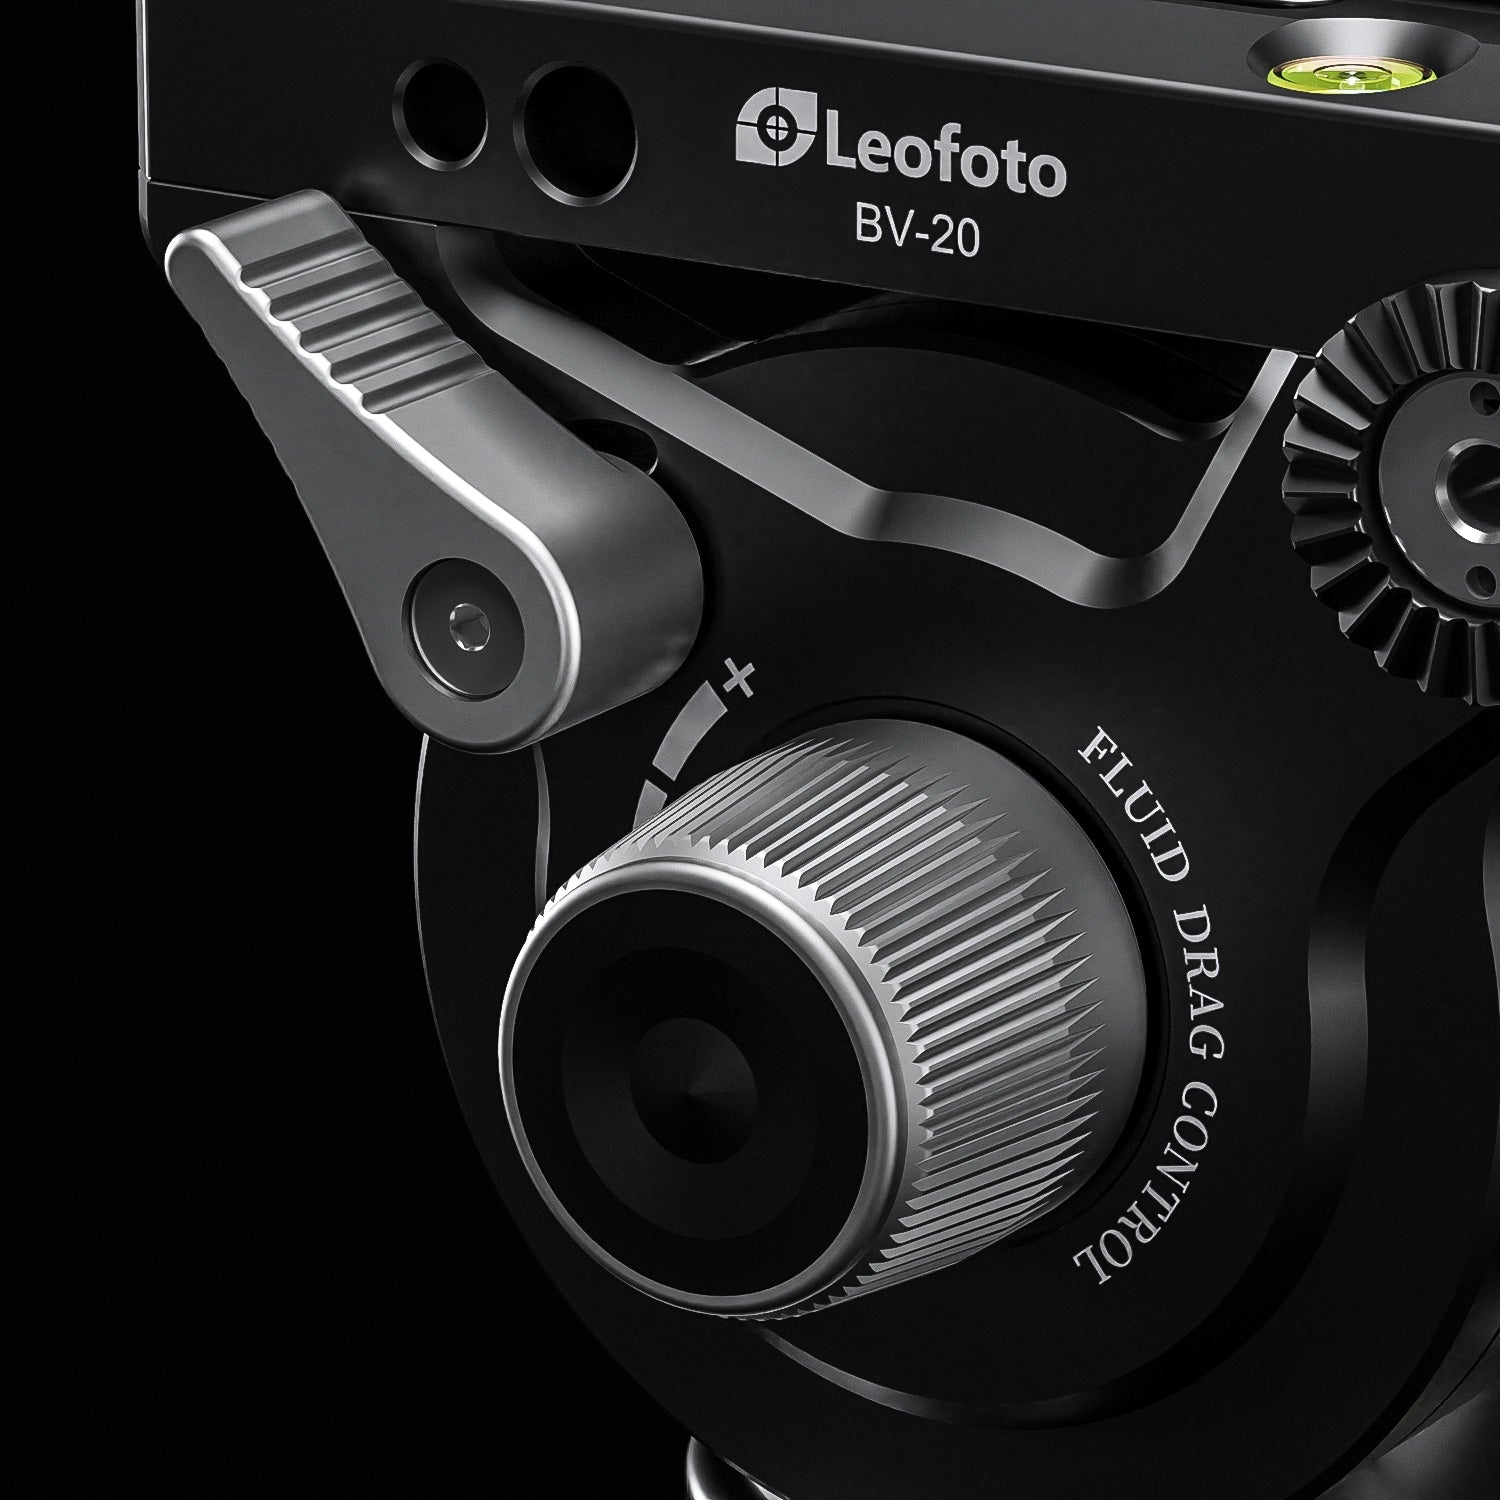 Leofoto BV-20K (Knob Clamp) Pro Fluid Video Head with Arca Compatible QR Plate